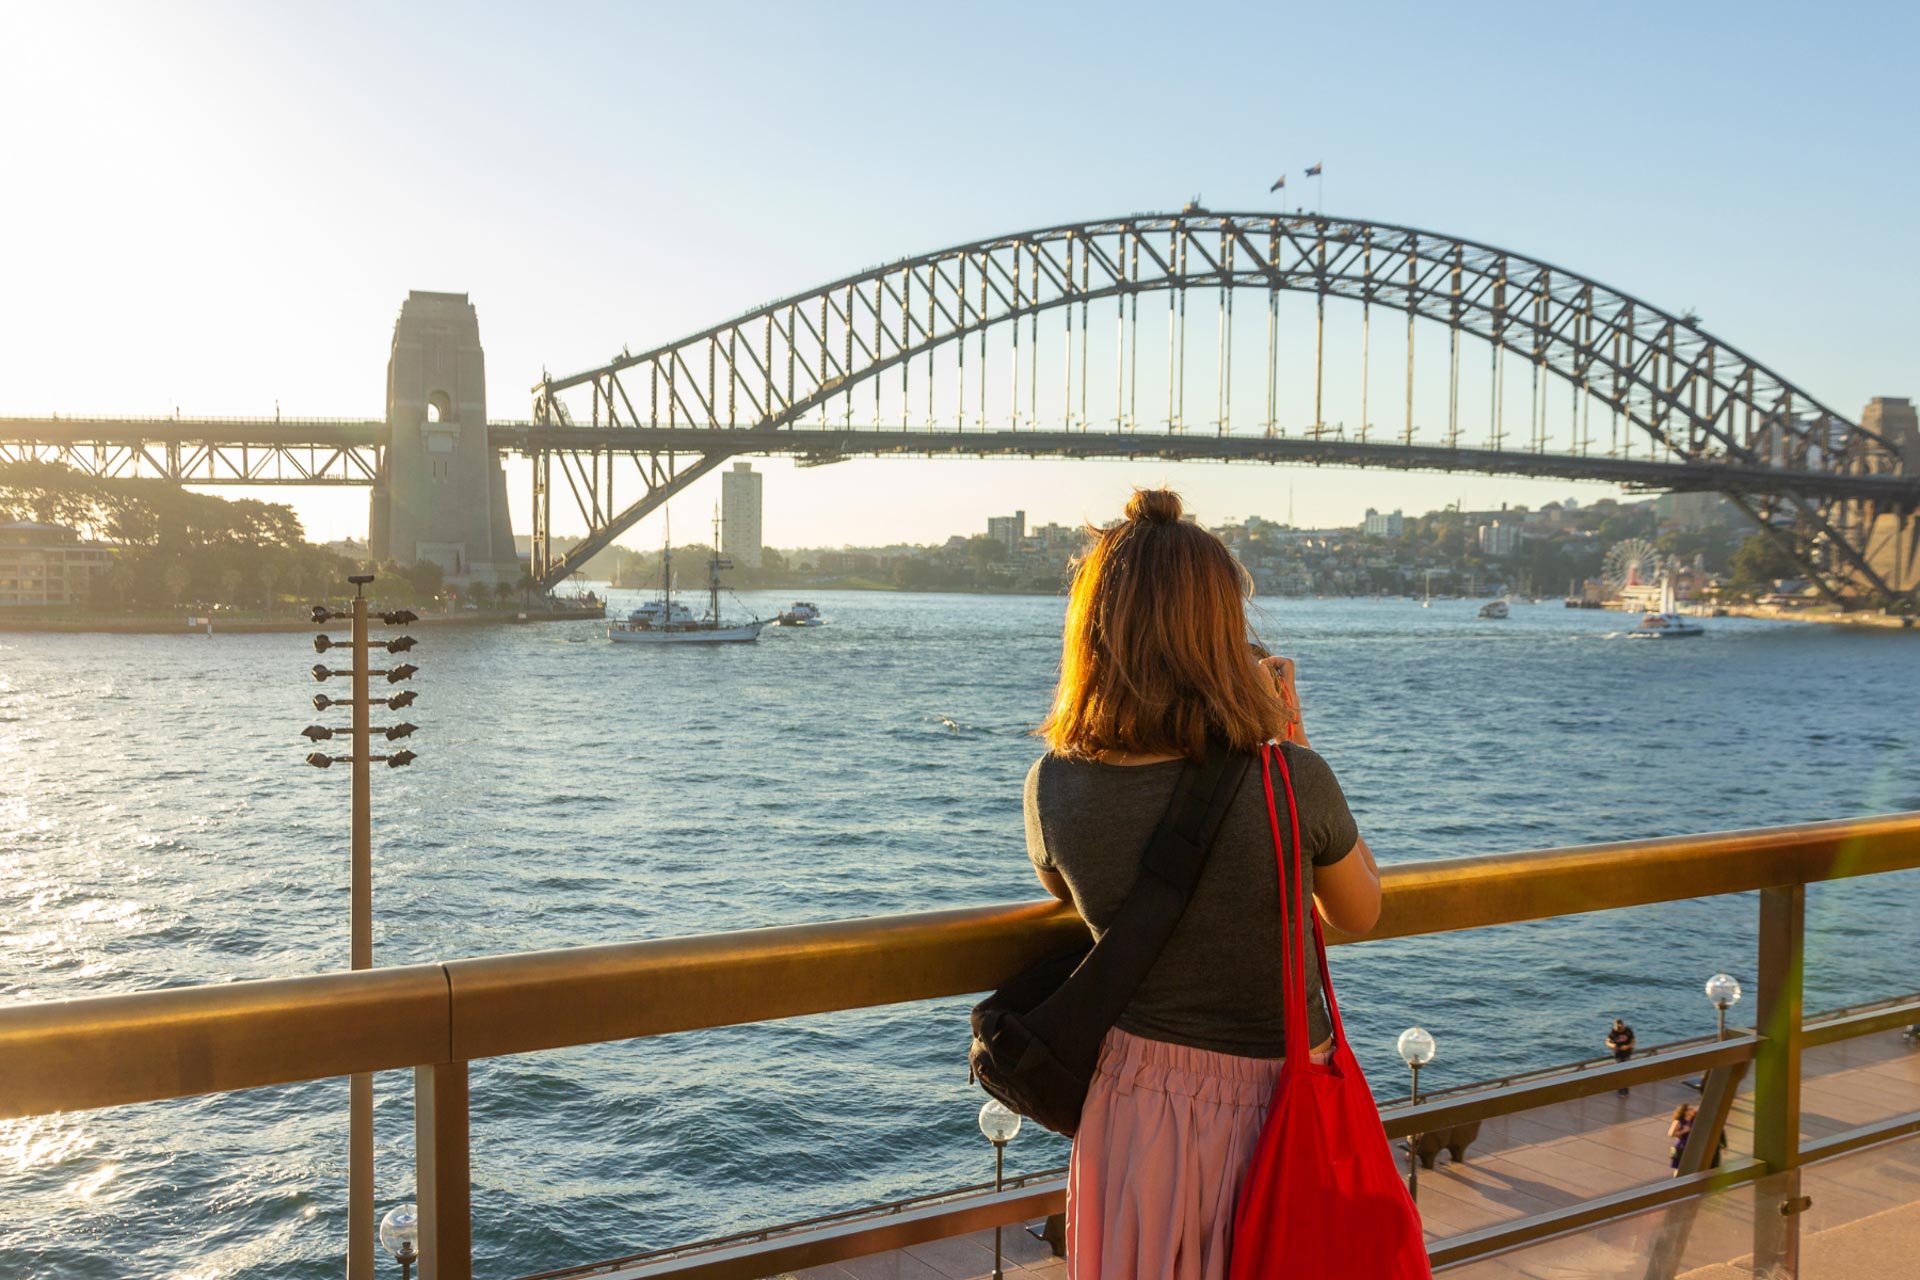 Woman looks across water toward bridge in Australia.